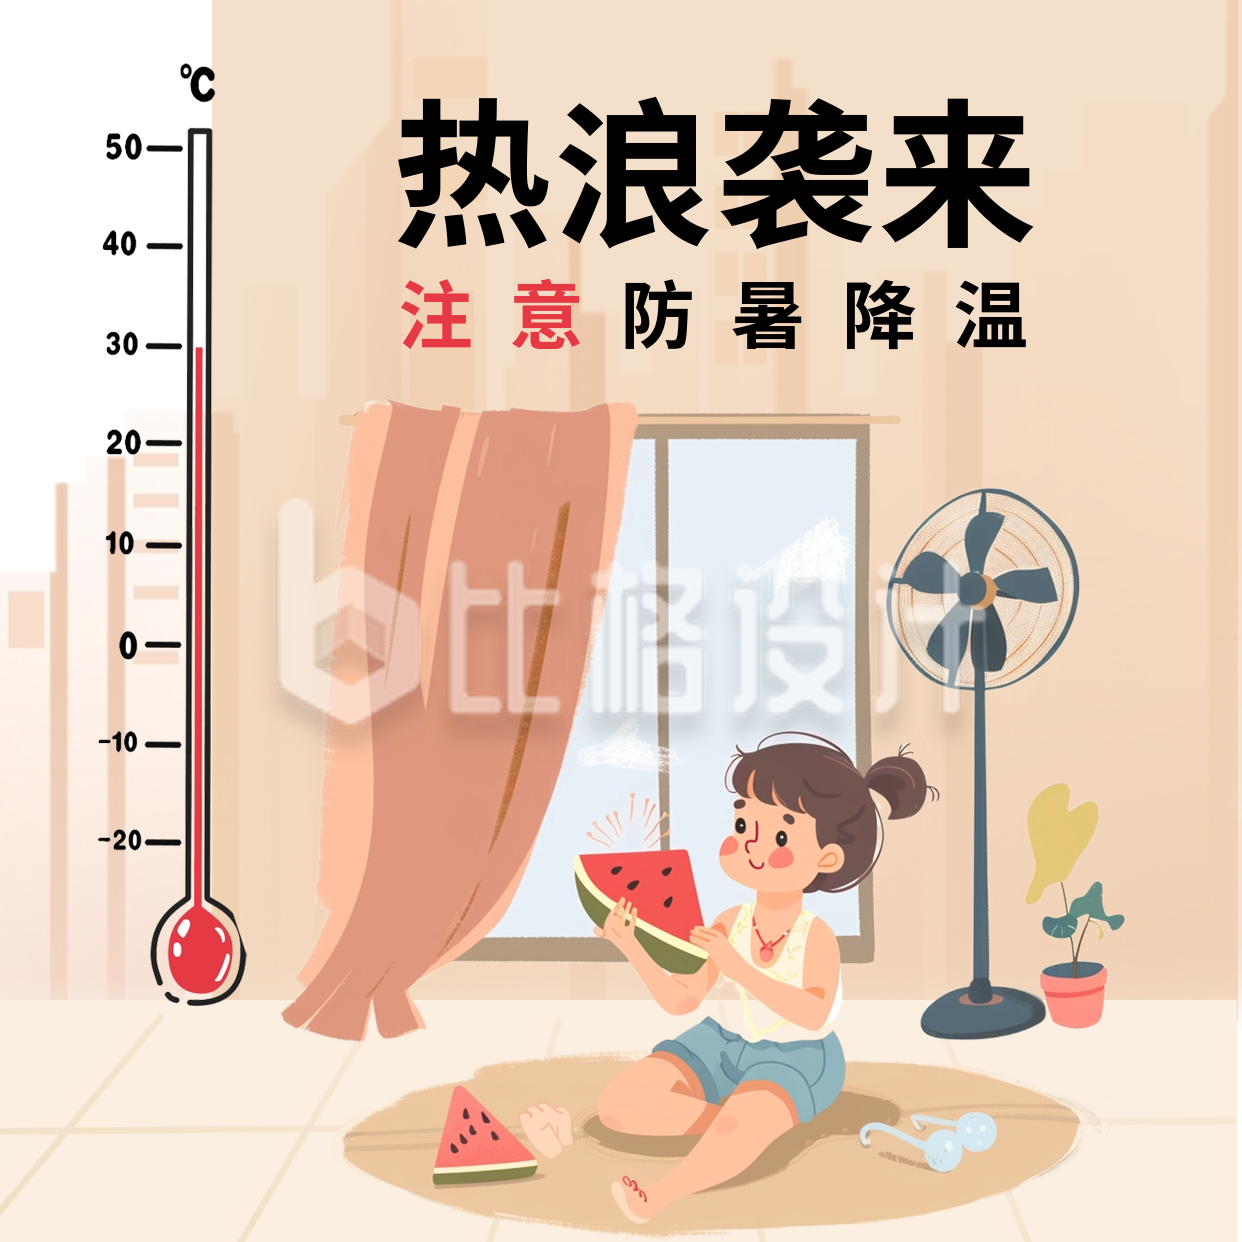 夏季高温注意防暑降温方形海报